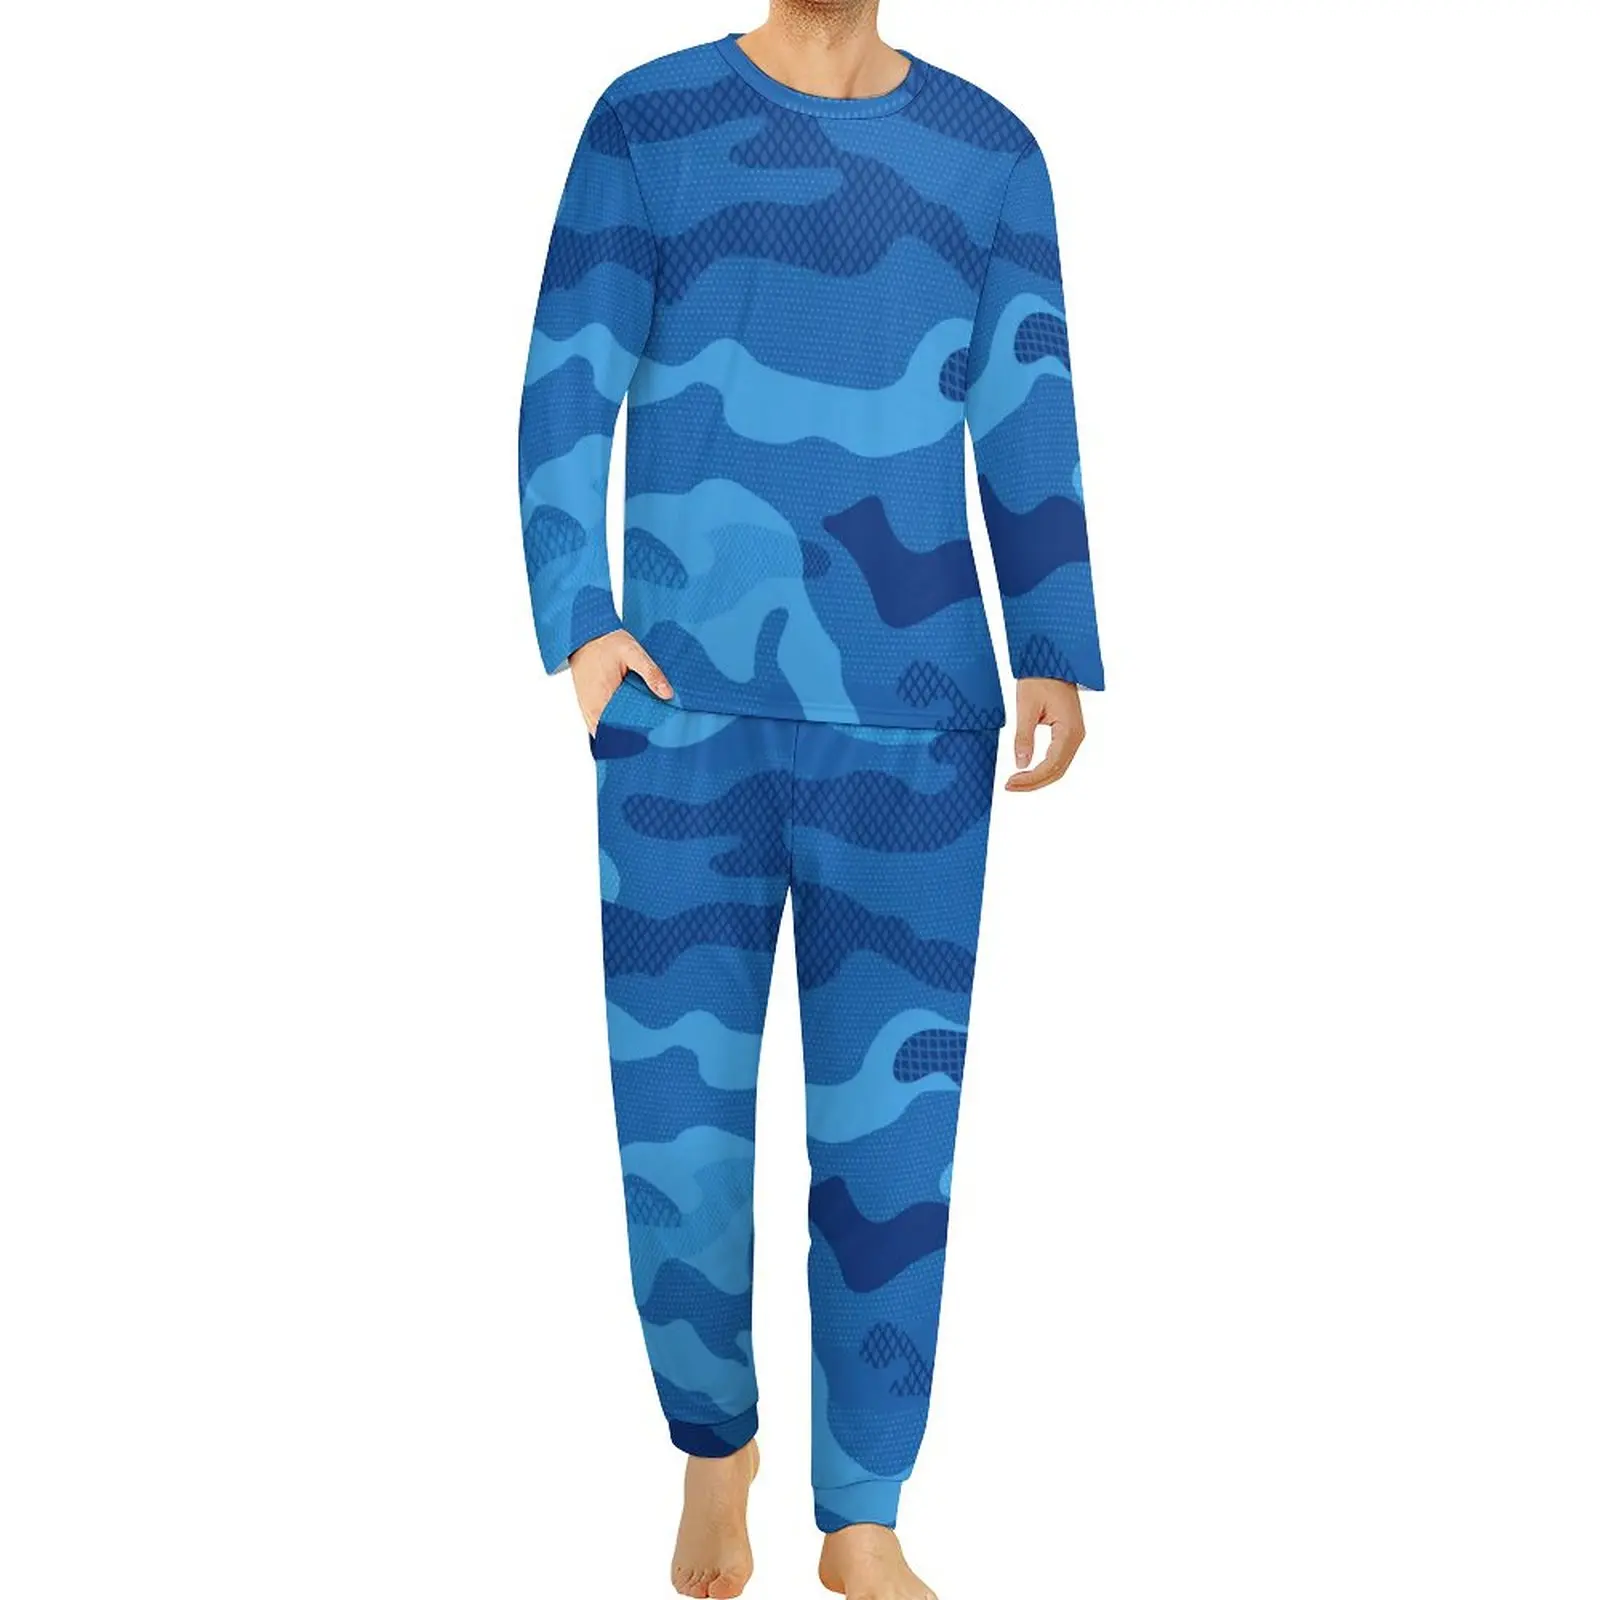 

Blue Camouflage Pajamas Spring 2 Piece Military Navy Camo Kawaii Pajamas Set Male Long Sleeve Casual Graphic Nightwear 4XL 5XL